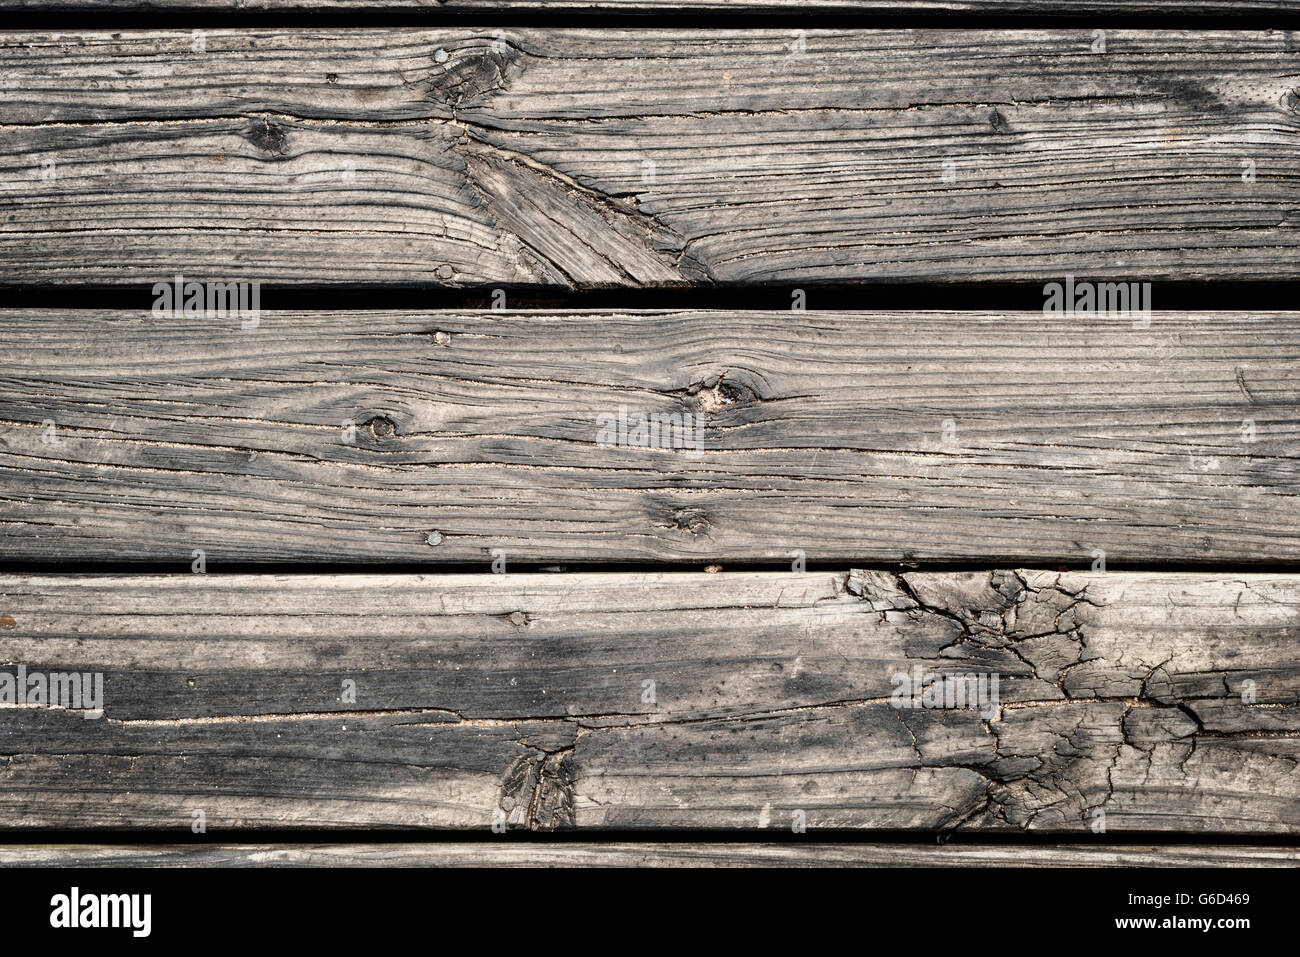 Close up Vue de dessus de la surface de plancher en bois grunge hipster, texture de fond rustique. Banque D'Images